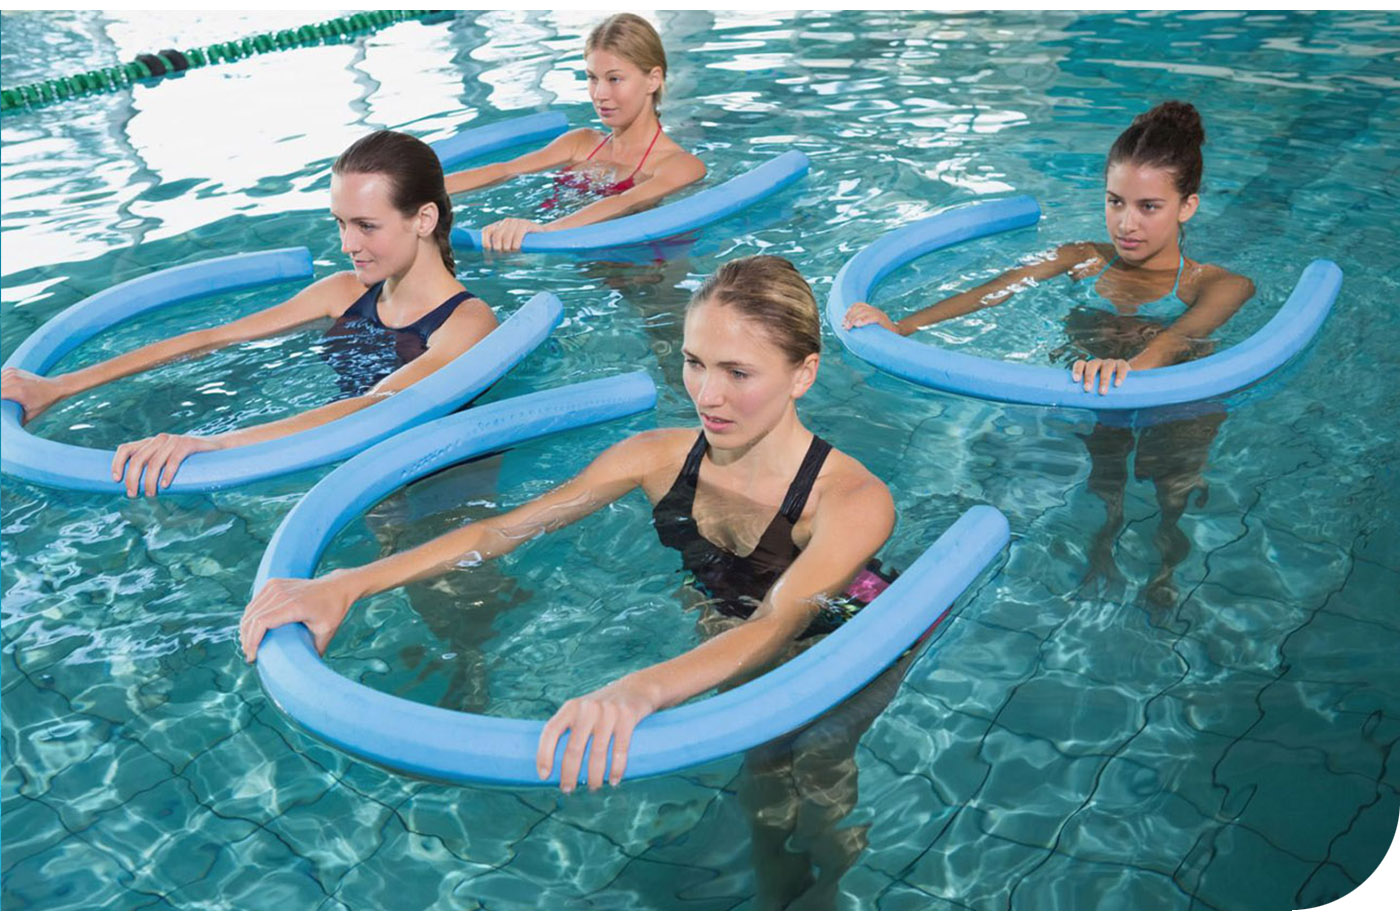 Aqua aerobic to aktywność fizyczna stanowiąca formę czynnego wypoczynku. Znakomicie wpływa na poprawę kondycji i modelowanie sylwetki, a przy tym, jest bardzo przyjemny! 